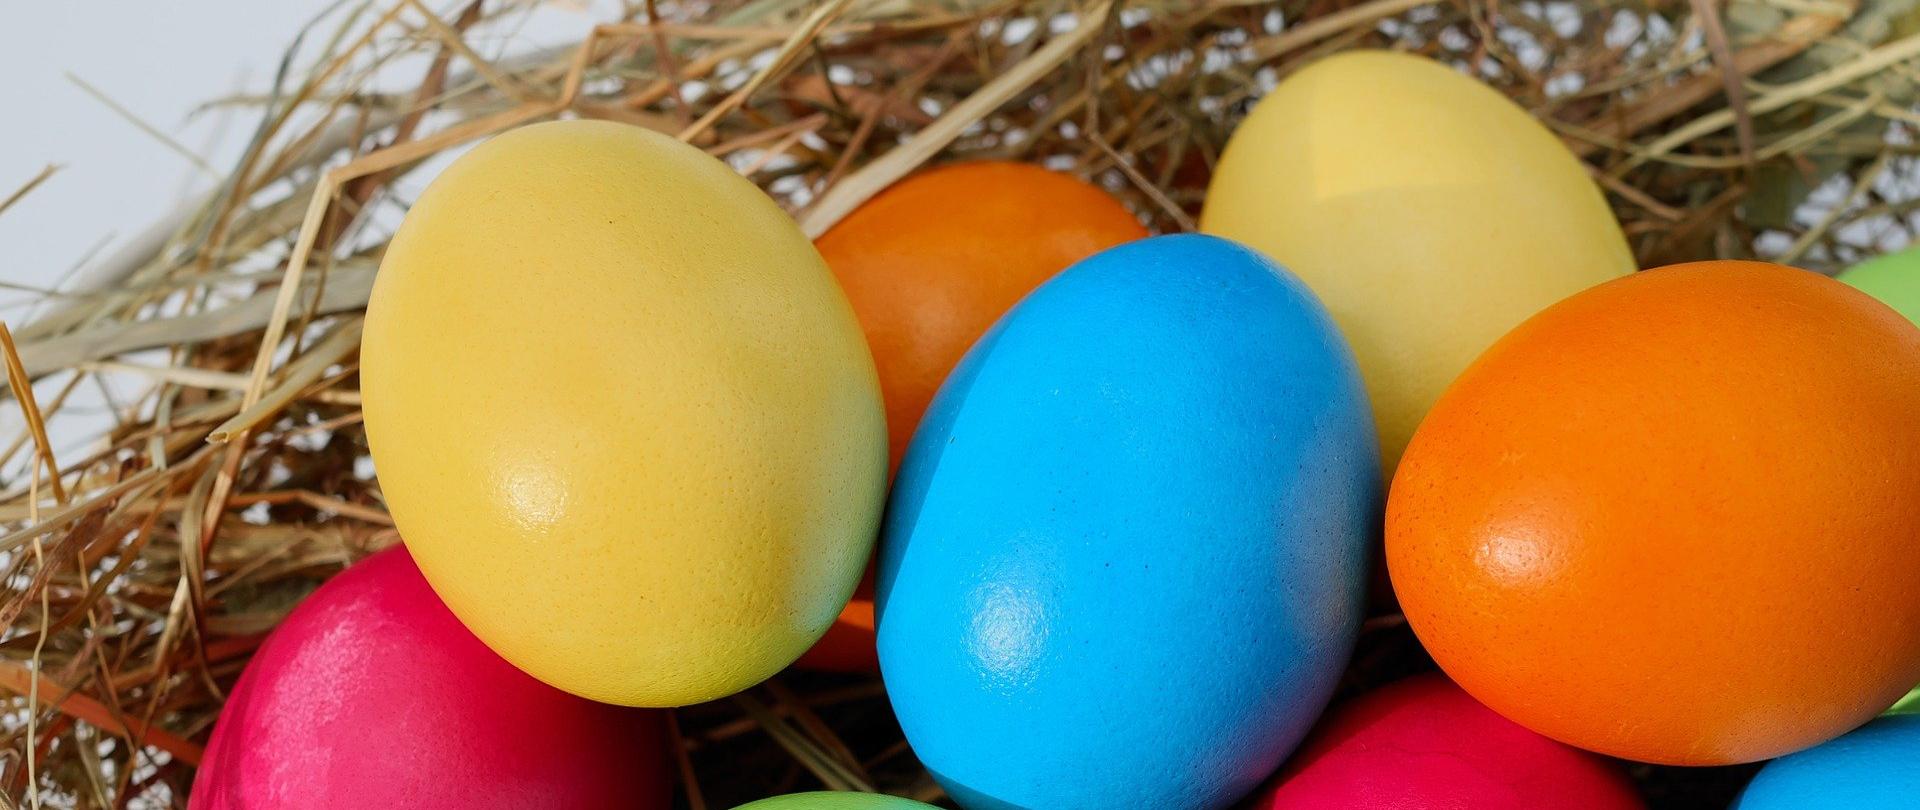 Kolorowe jajka na słomie